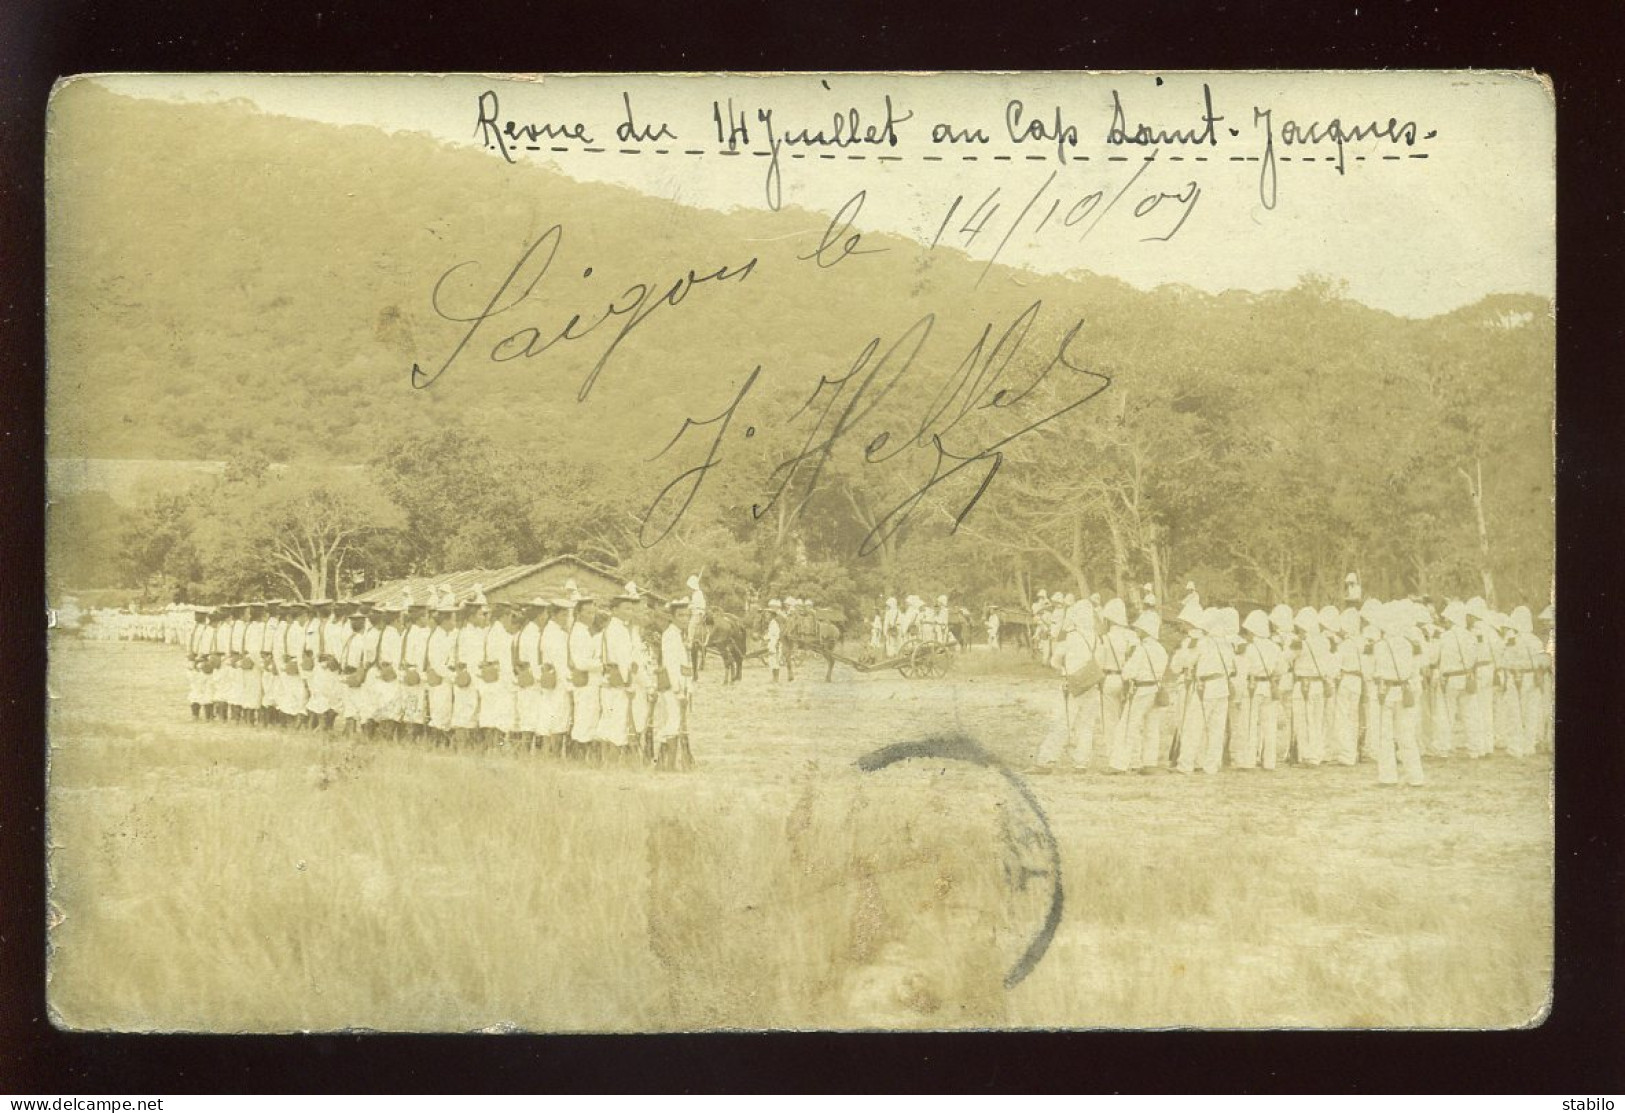 VIET-NAM - SAIGON - REVUE DU 14 JUILLET 1909 AU CAP ST-JACQUES - CARTE PHOTO ORIGINALE - Viêt-Nam